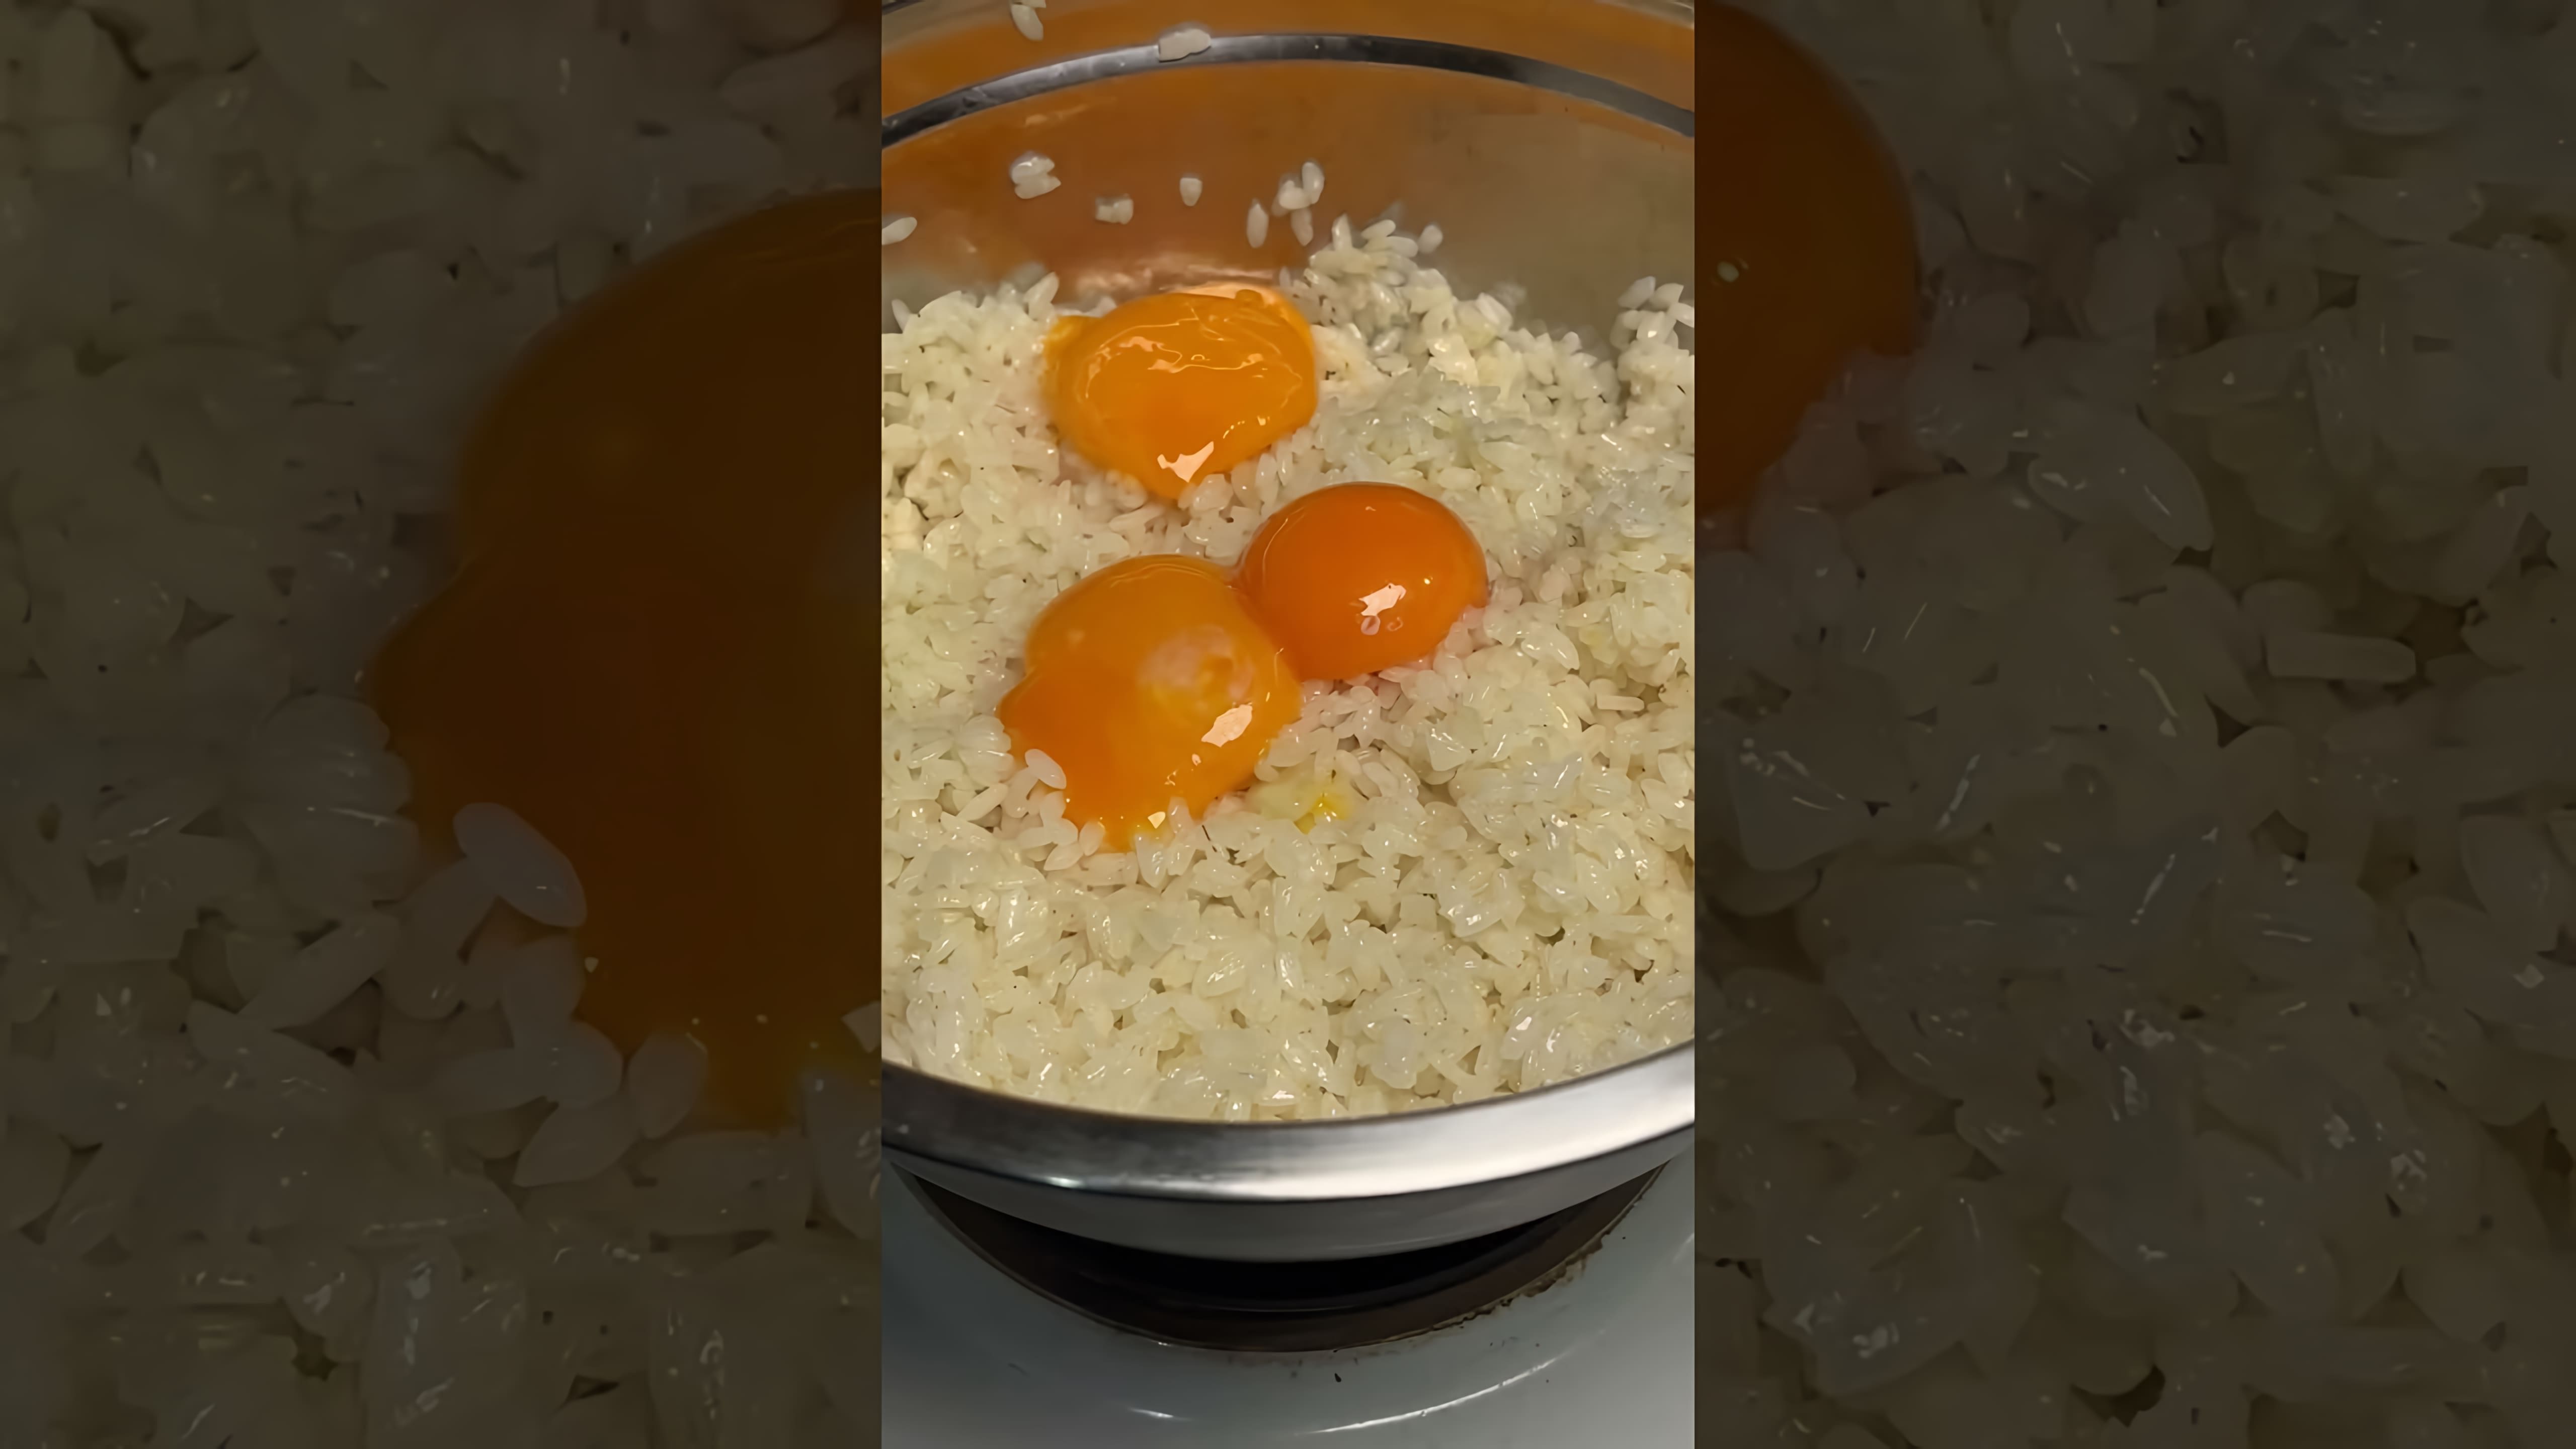 В этом видео демонстрируется рецепт приготовления риса, который был предложен китайской семьей